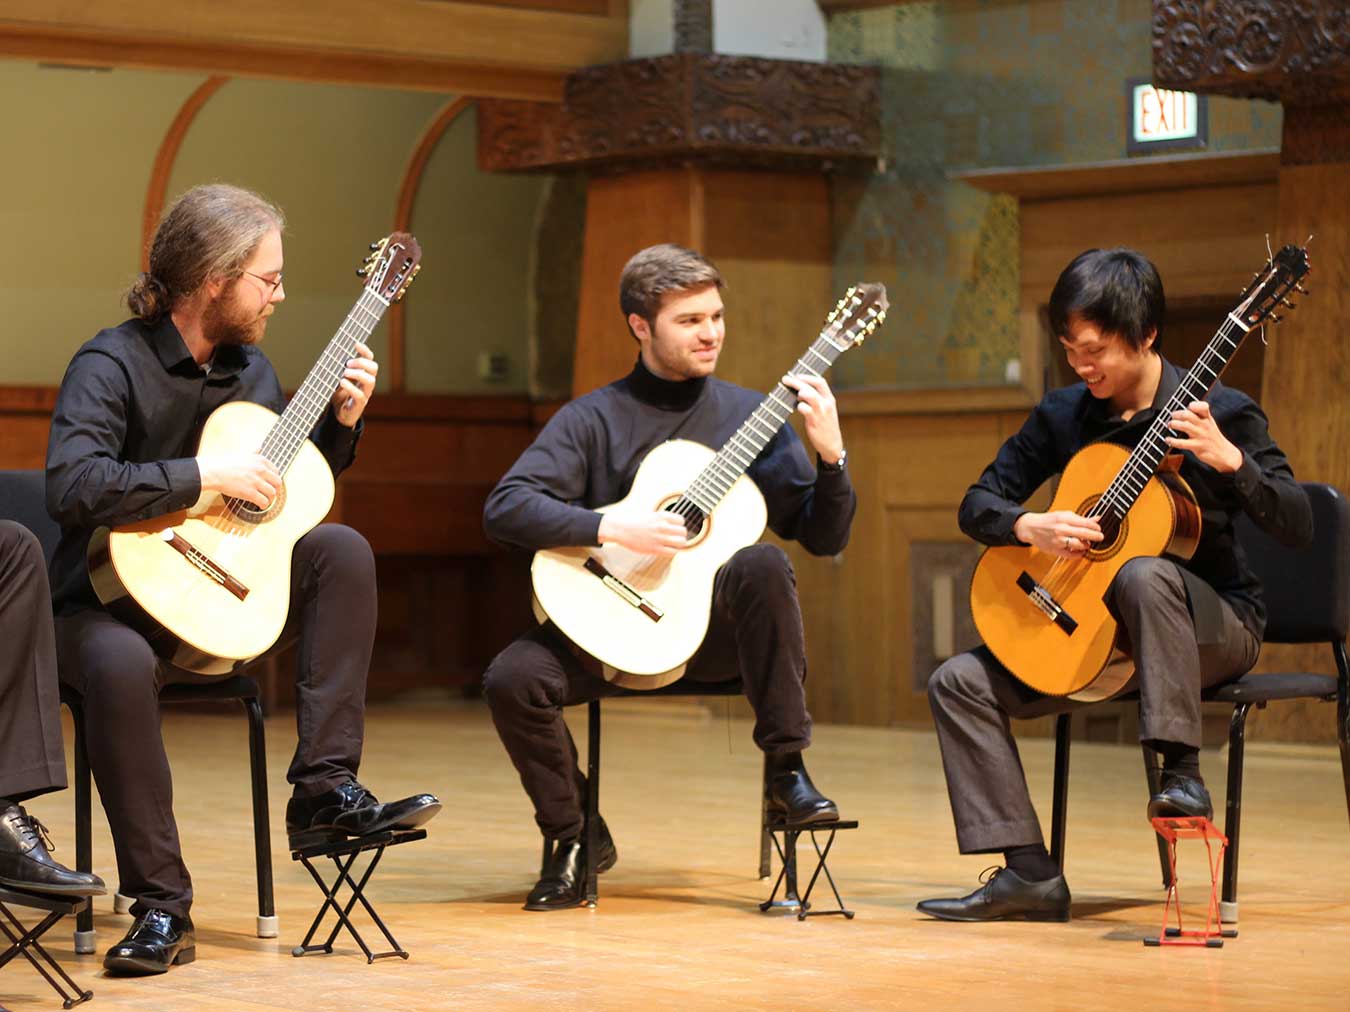 Classical guitar students giving a recital